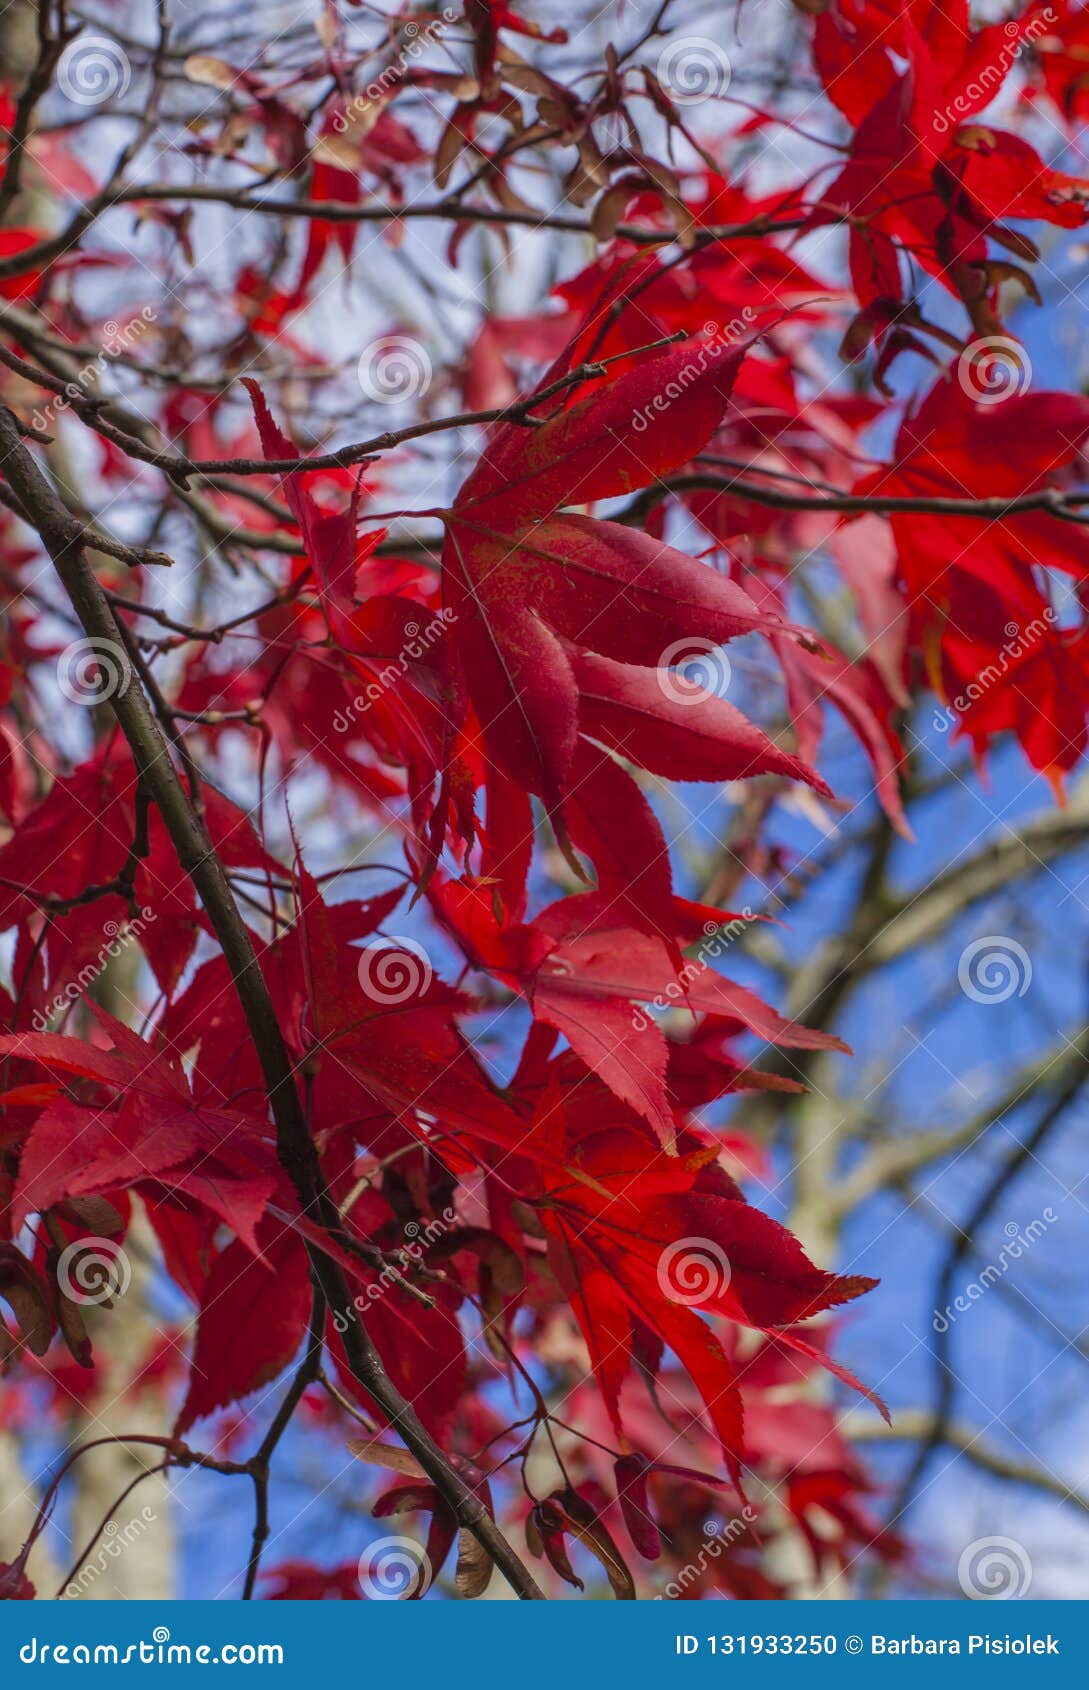 Cumbria, περιοχή λιμνών, Αγγλία, το UK - χρώματα του φθινοπώρου  κόκκινοι φύλλα και μπλε ουρανοί. Αυτή η εικόνα παρουσιάζει μερικούς κόκκινους φύλλα και μπλε ουρανούς σε Cumbria, περιοχή λιμνών, Αγγλία Λήφθηκε μια ηλιόλουστη ημέρα τον Οκτώβριο του 2018